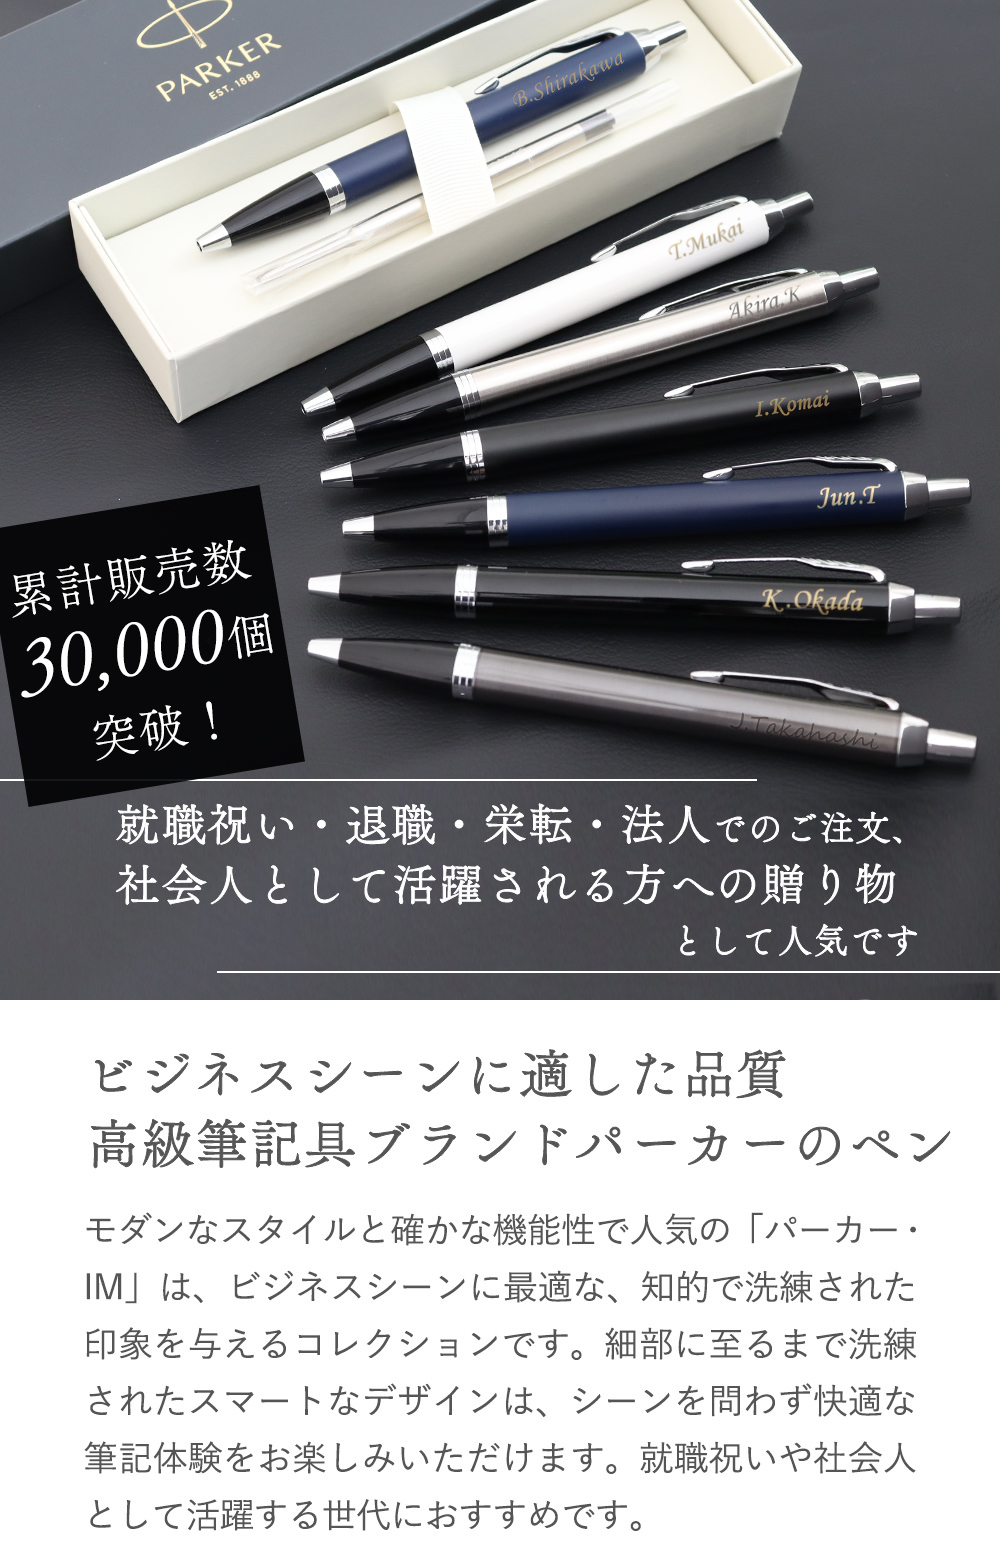 ビジネスシーンに適した品質高級筆記具ブランドパーカーのペン